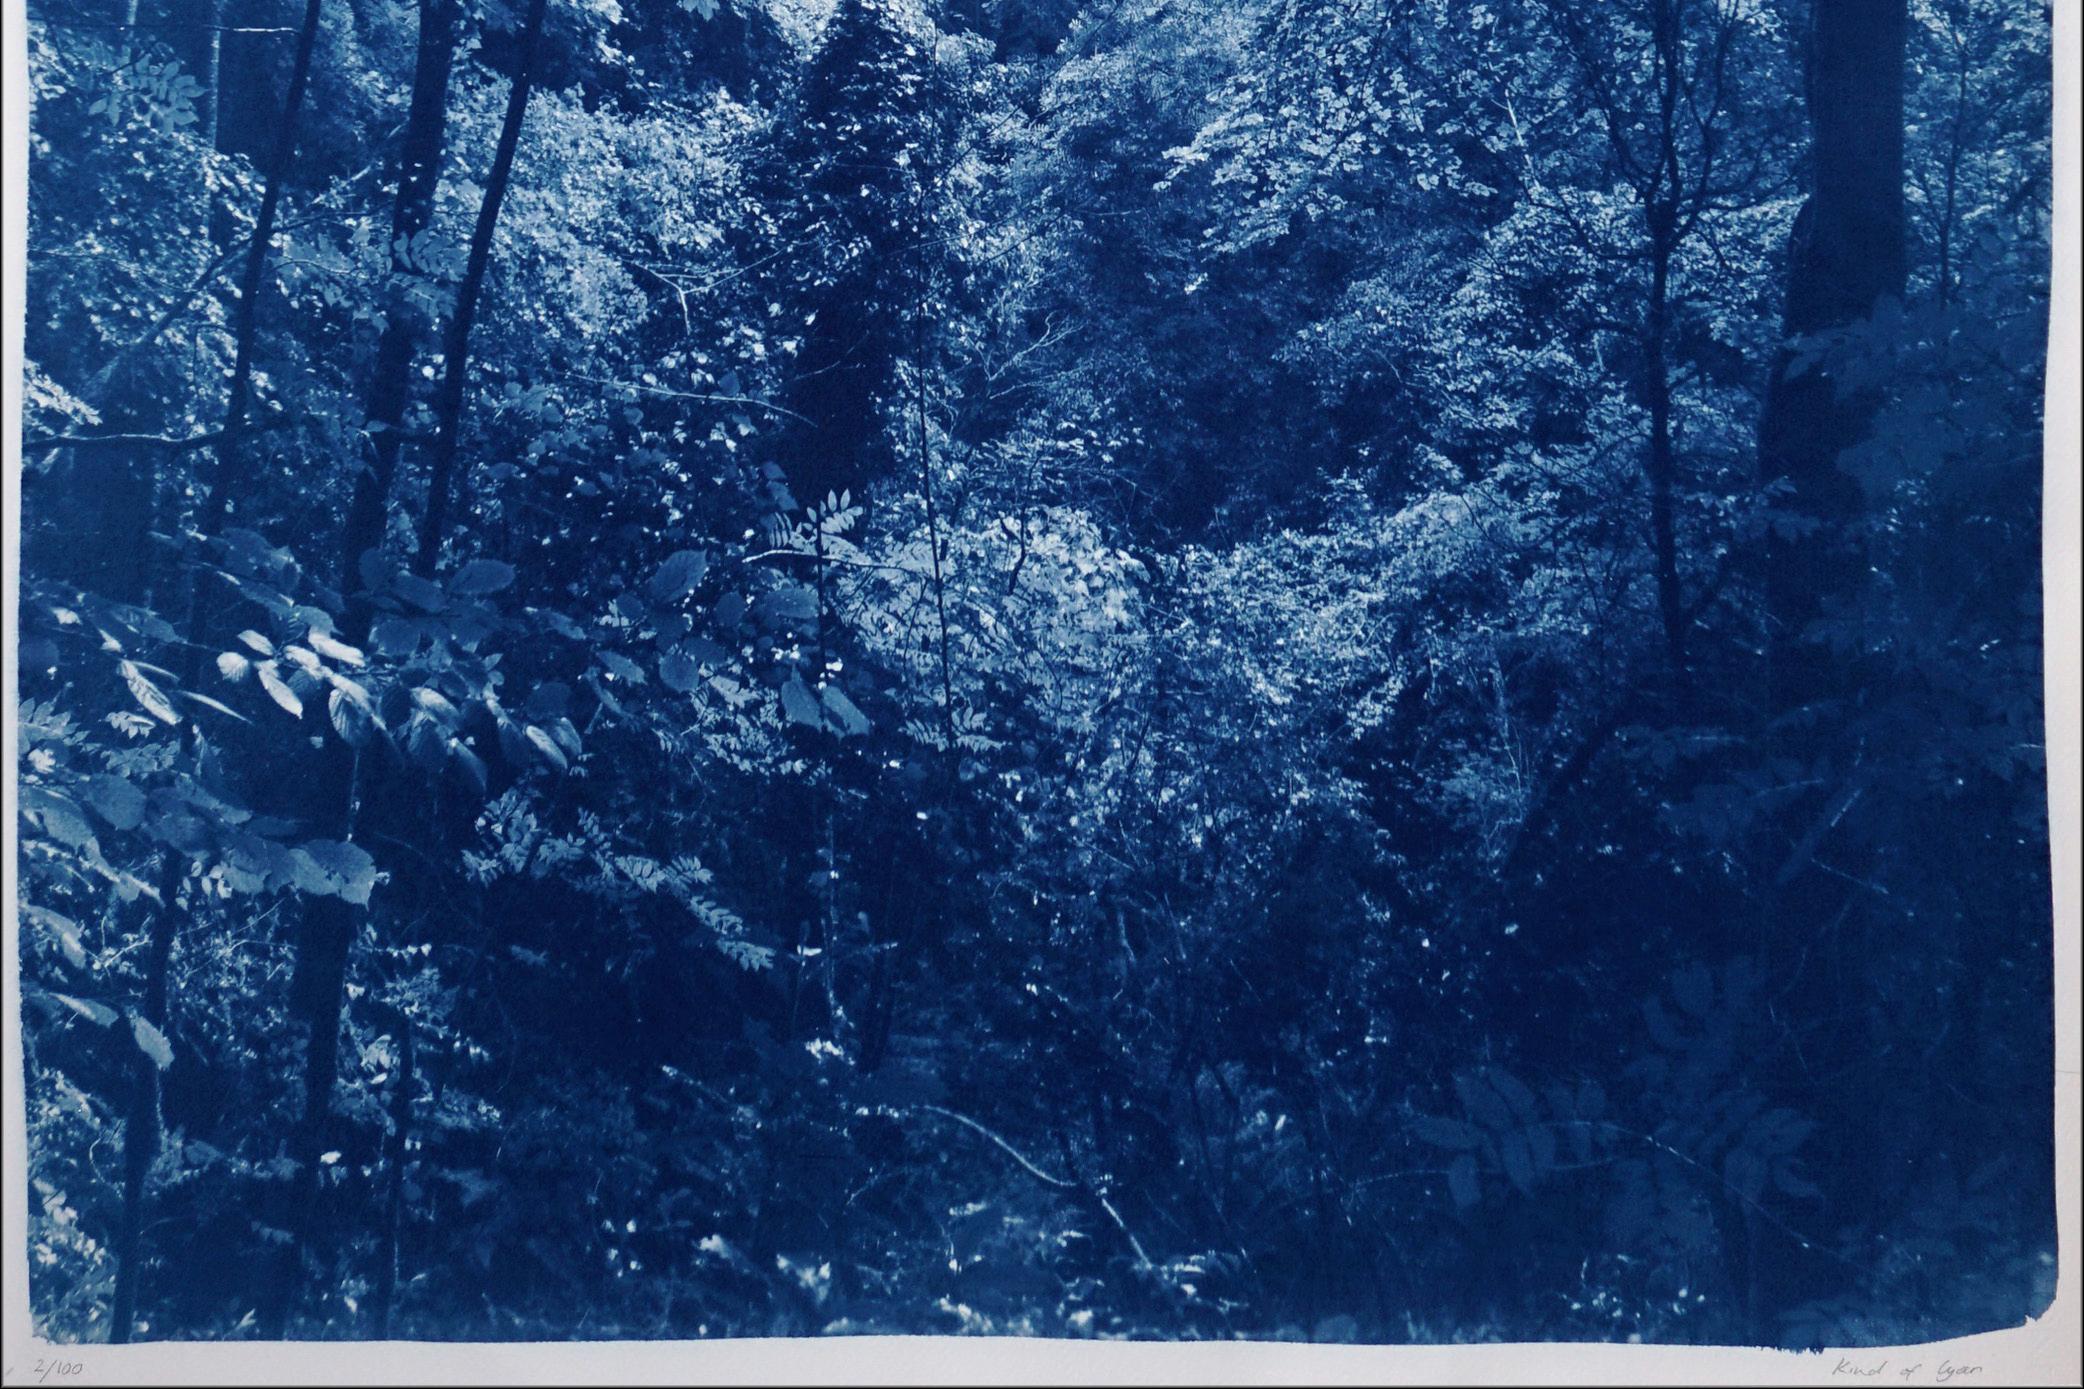 Il s'agit d'une édition limitée exclusive imprimée à la main d'un tirage cyanotype.
Cette belle image montre la lumière subtile de l'après-midi traversant les bois pendant l'été. 

Détails :
+ Titre : Lumière douce dans les bois
+ Année : 2024
+